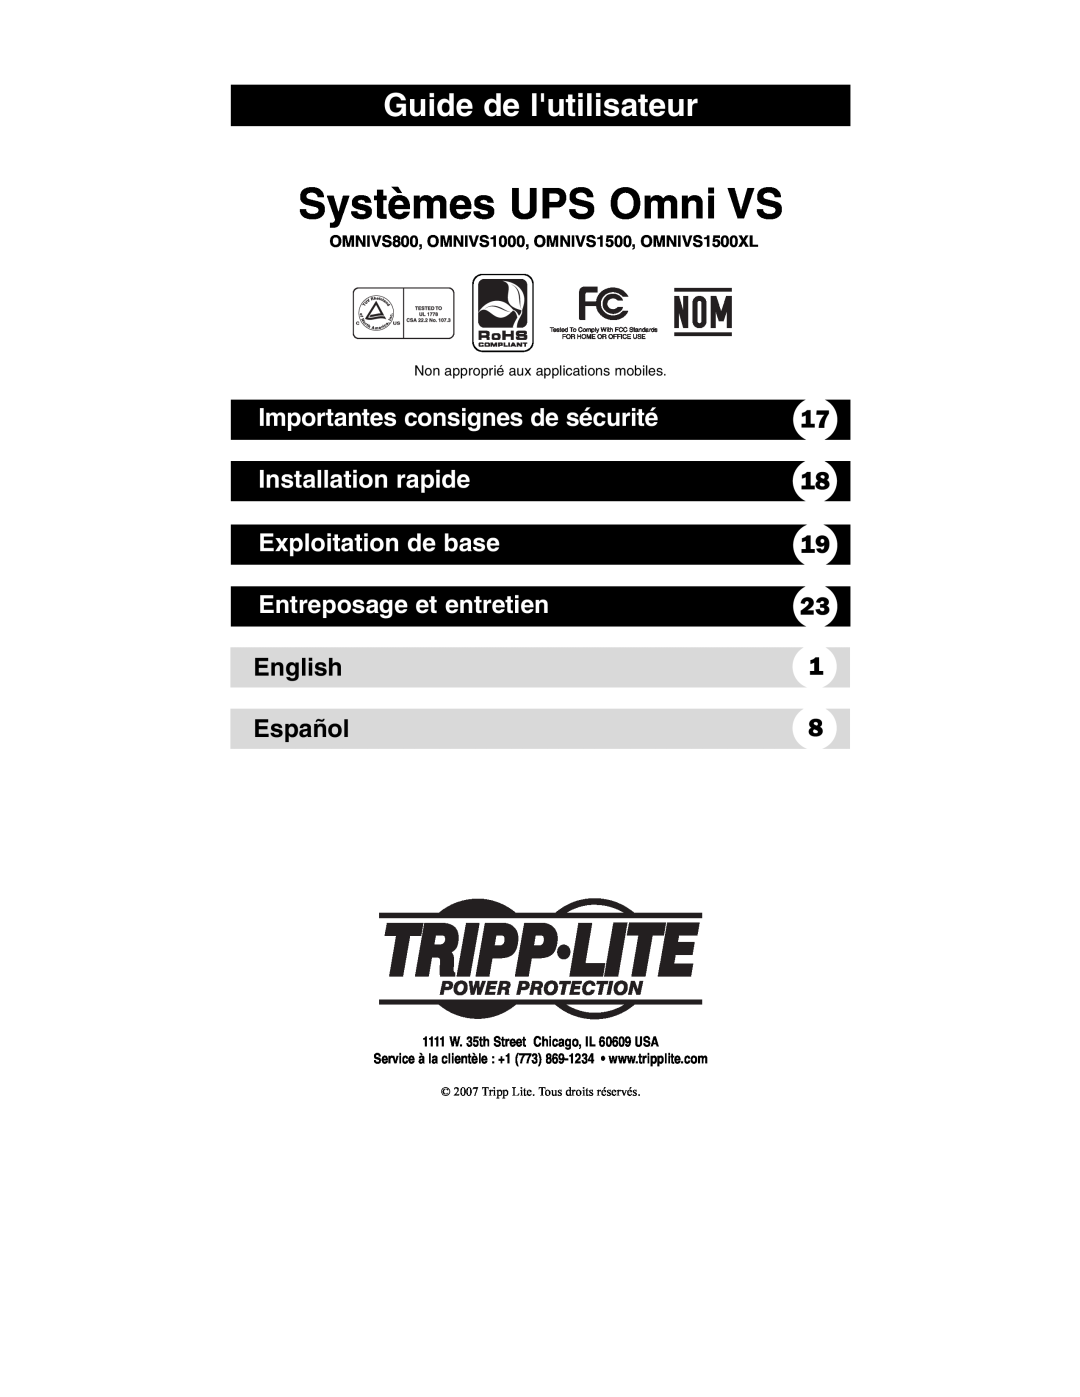 Tripp Lite OMNIVS800 Systèmes UPS Omni VS, Guide de lutilisateur, Importantes consignes de sécurité, Installation rapide 